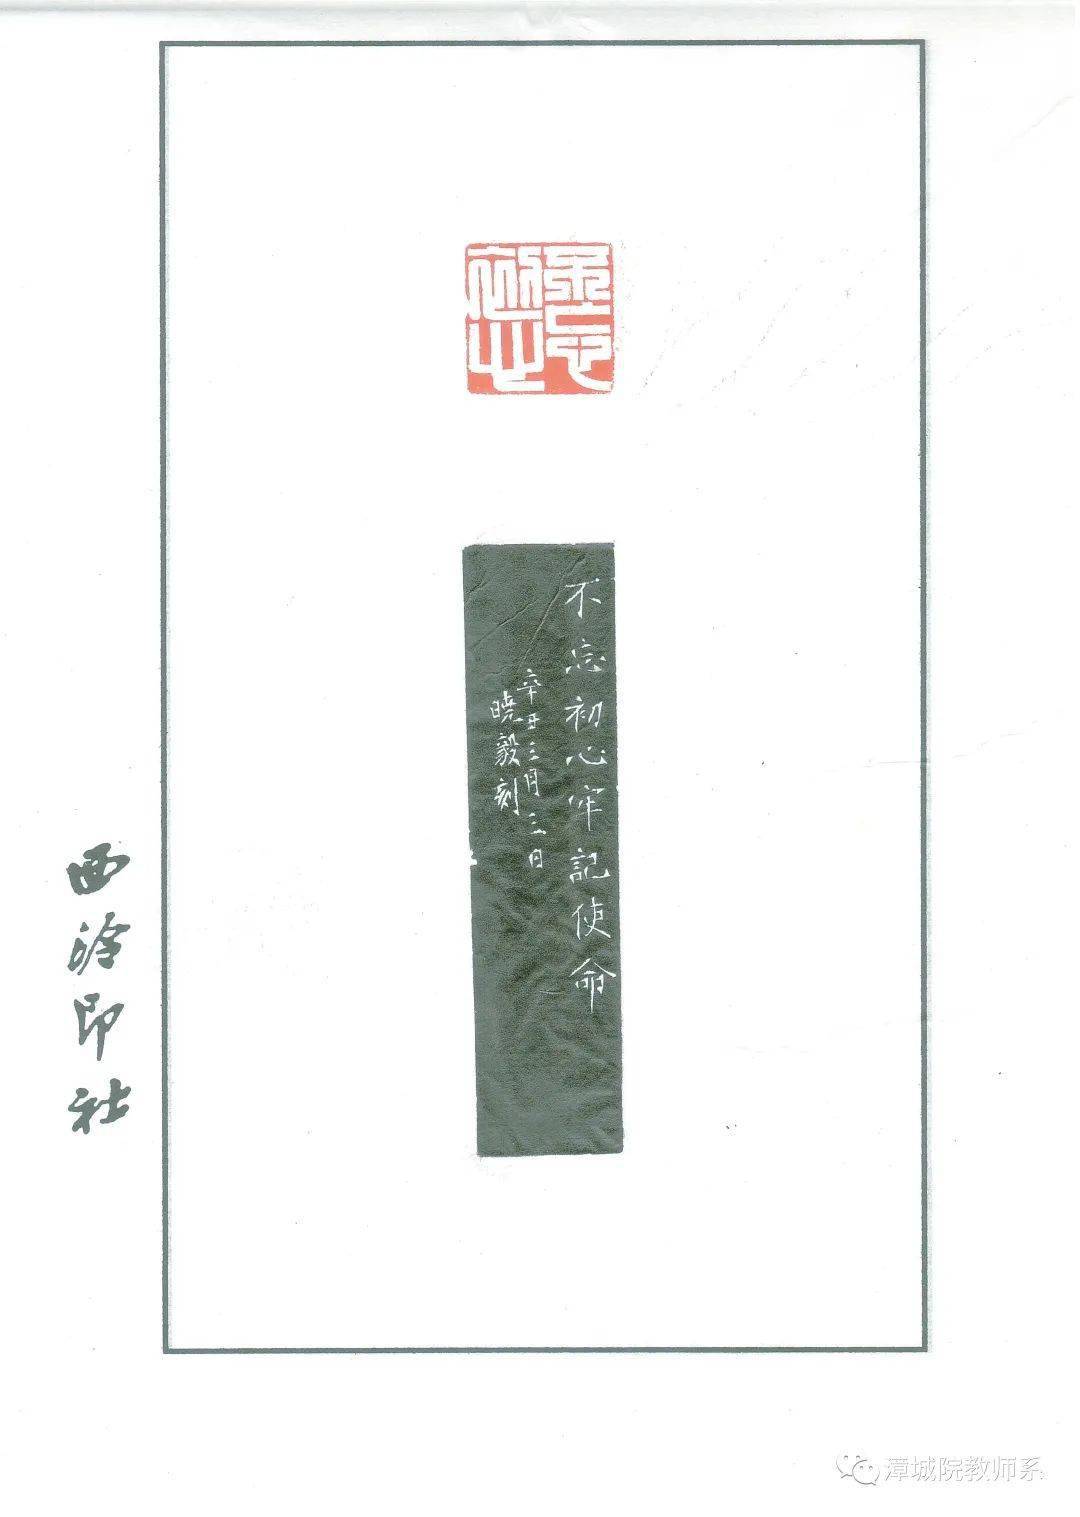 学生郑晓毅在全国第三届中华经典诵写讲大赛印记中国师生篆刻大赛中